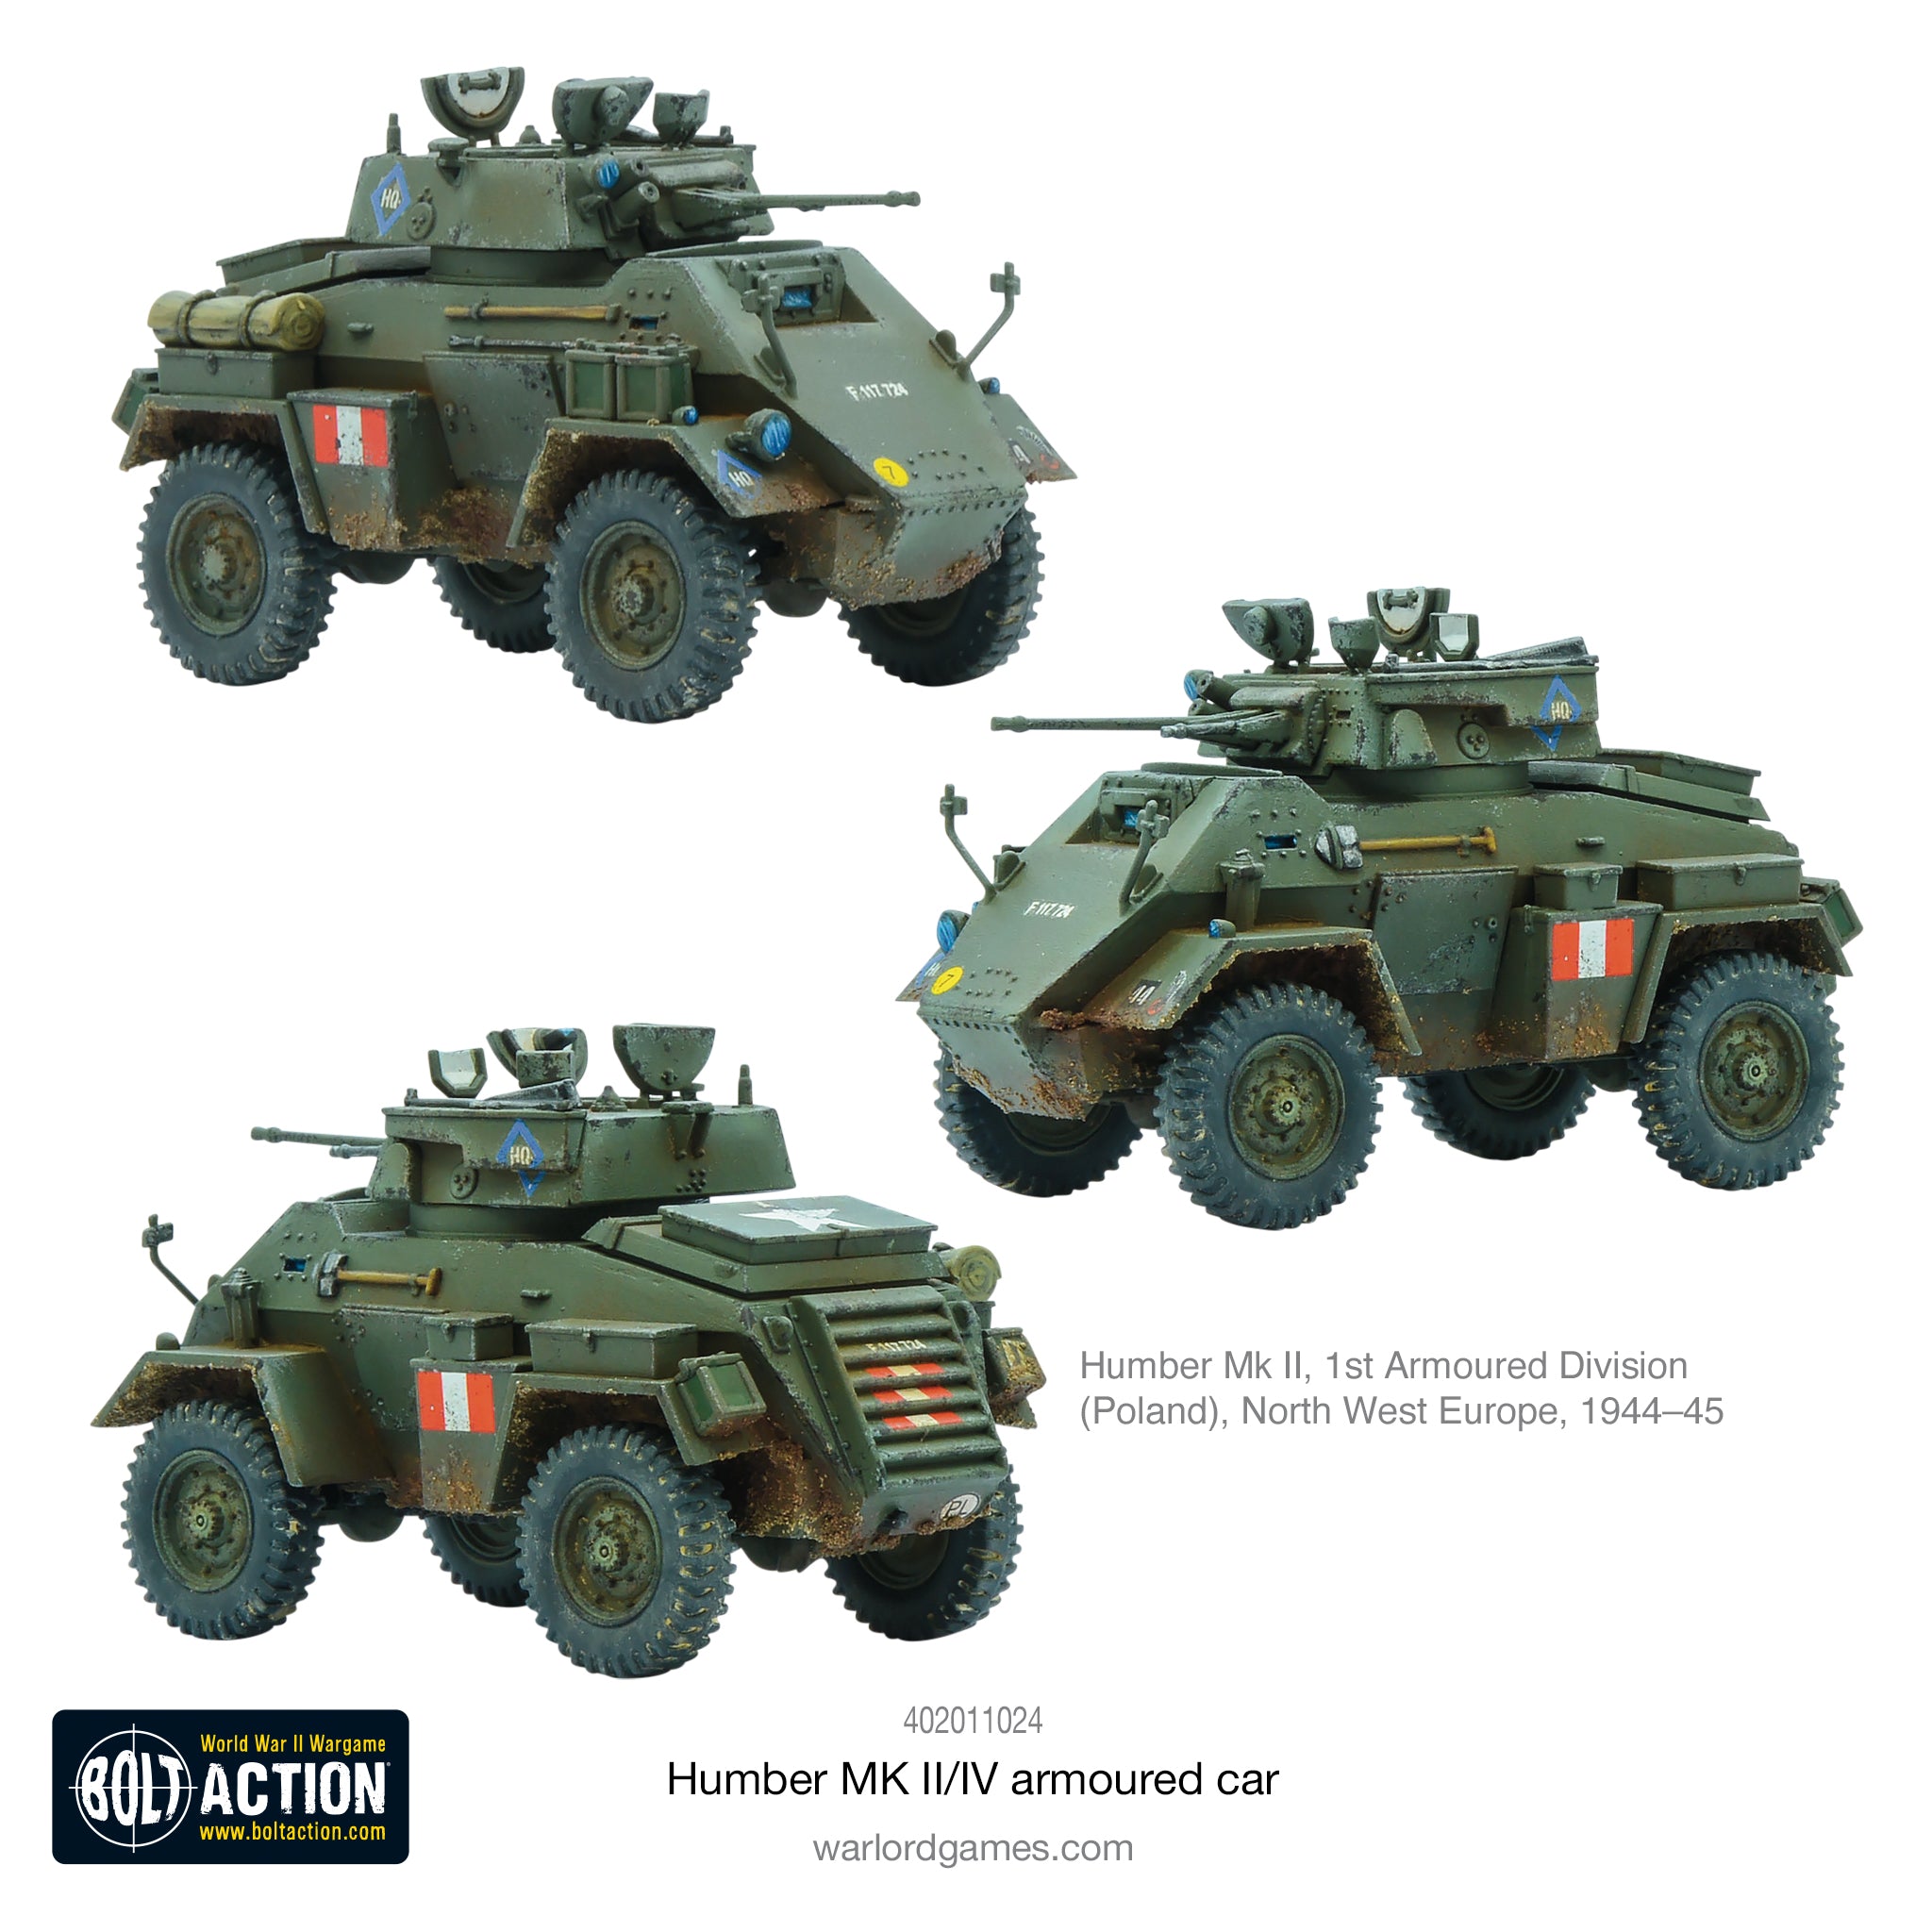 Humber MK II/IV armoured car